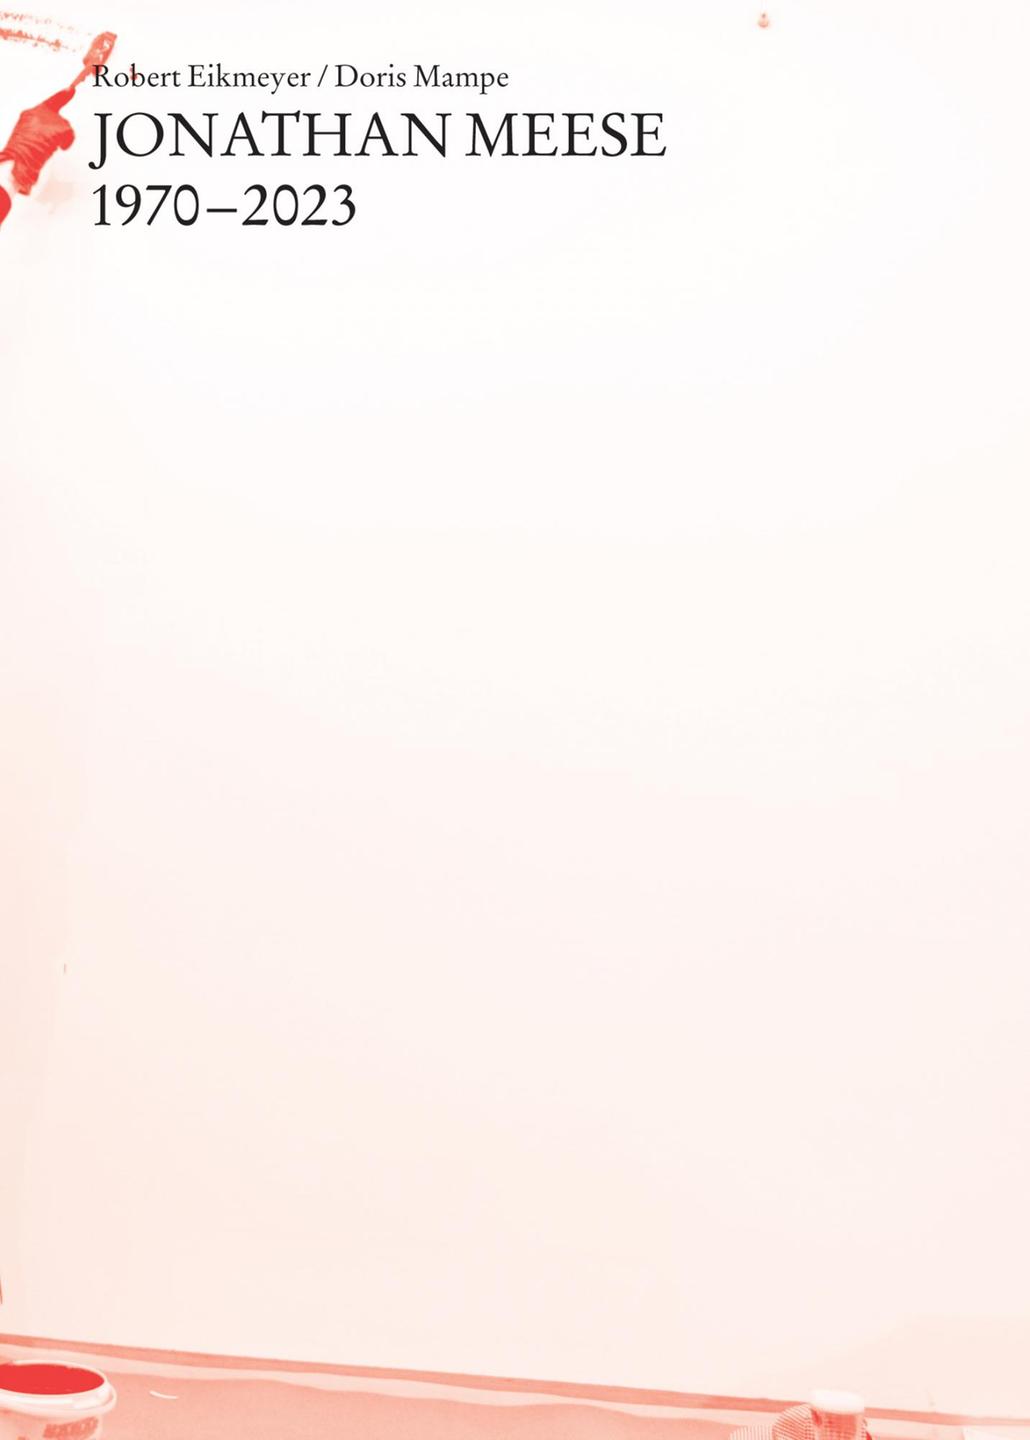 Cover des Buches "Jonathan Meese: 1970-2023" von Robert Eikmeyer und Doris Mampe